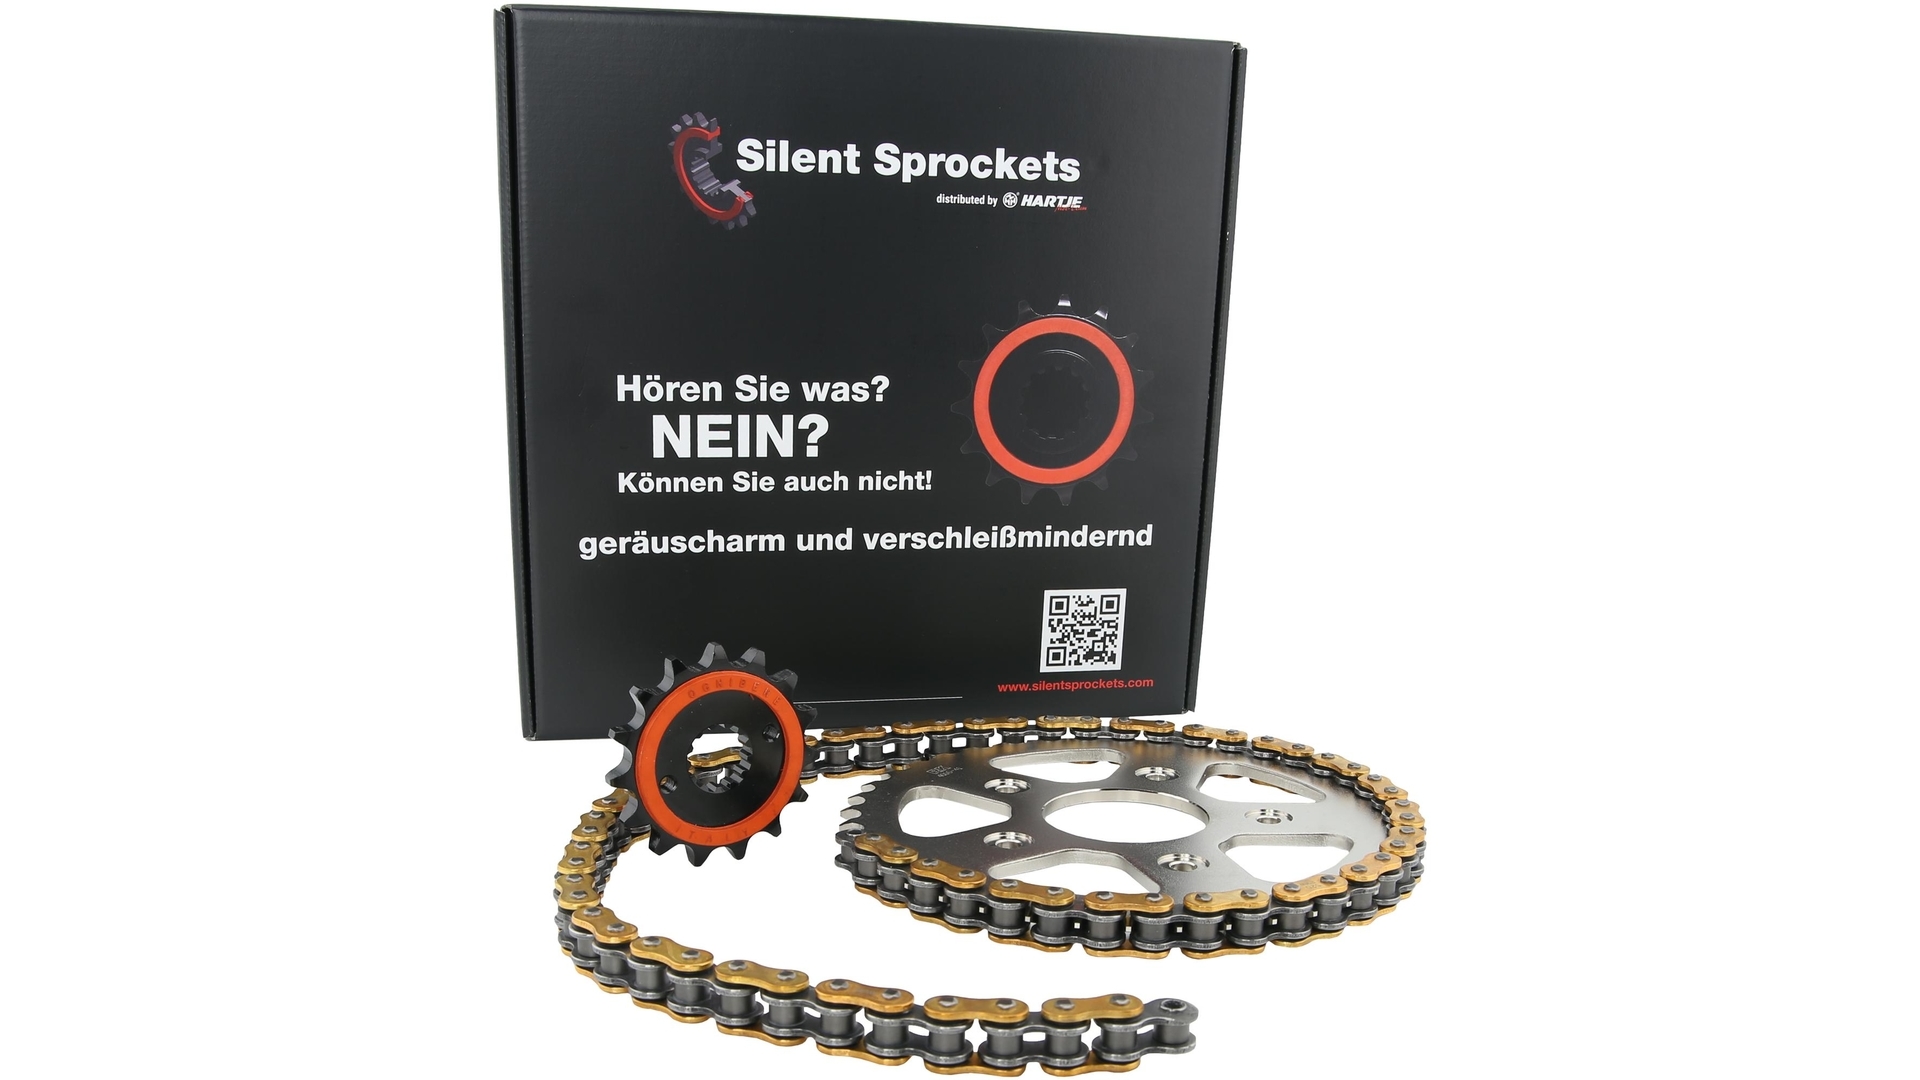 RK Kettensatz Standard, GB520XSO2, RX-Ring